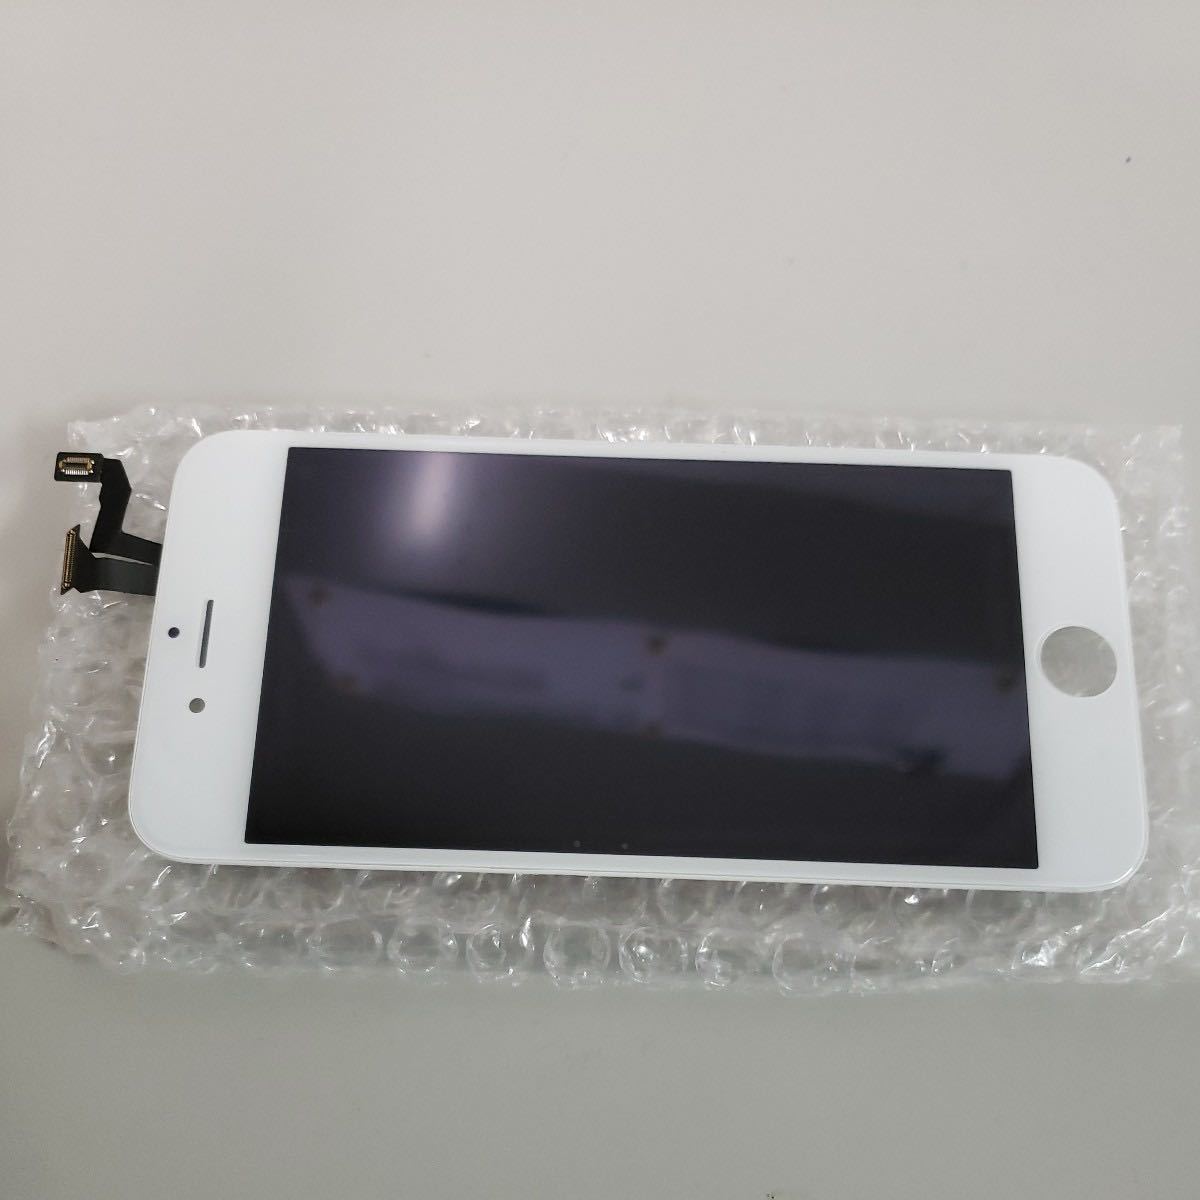 510y0905*SZM iPhone6s сенсорная панель замена для ремонта переднее стекло teji Thai The жидкокристаллический фланель комплект (6S, белый )